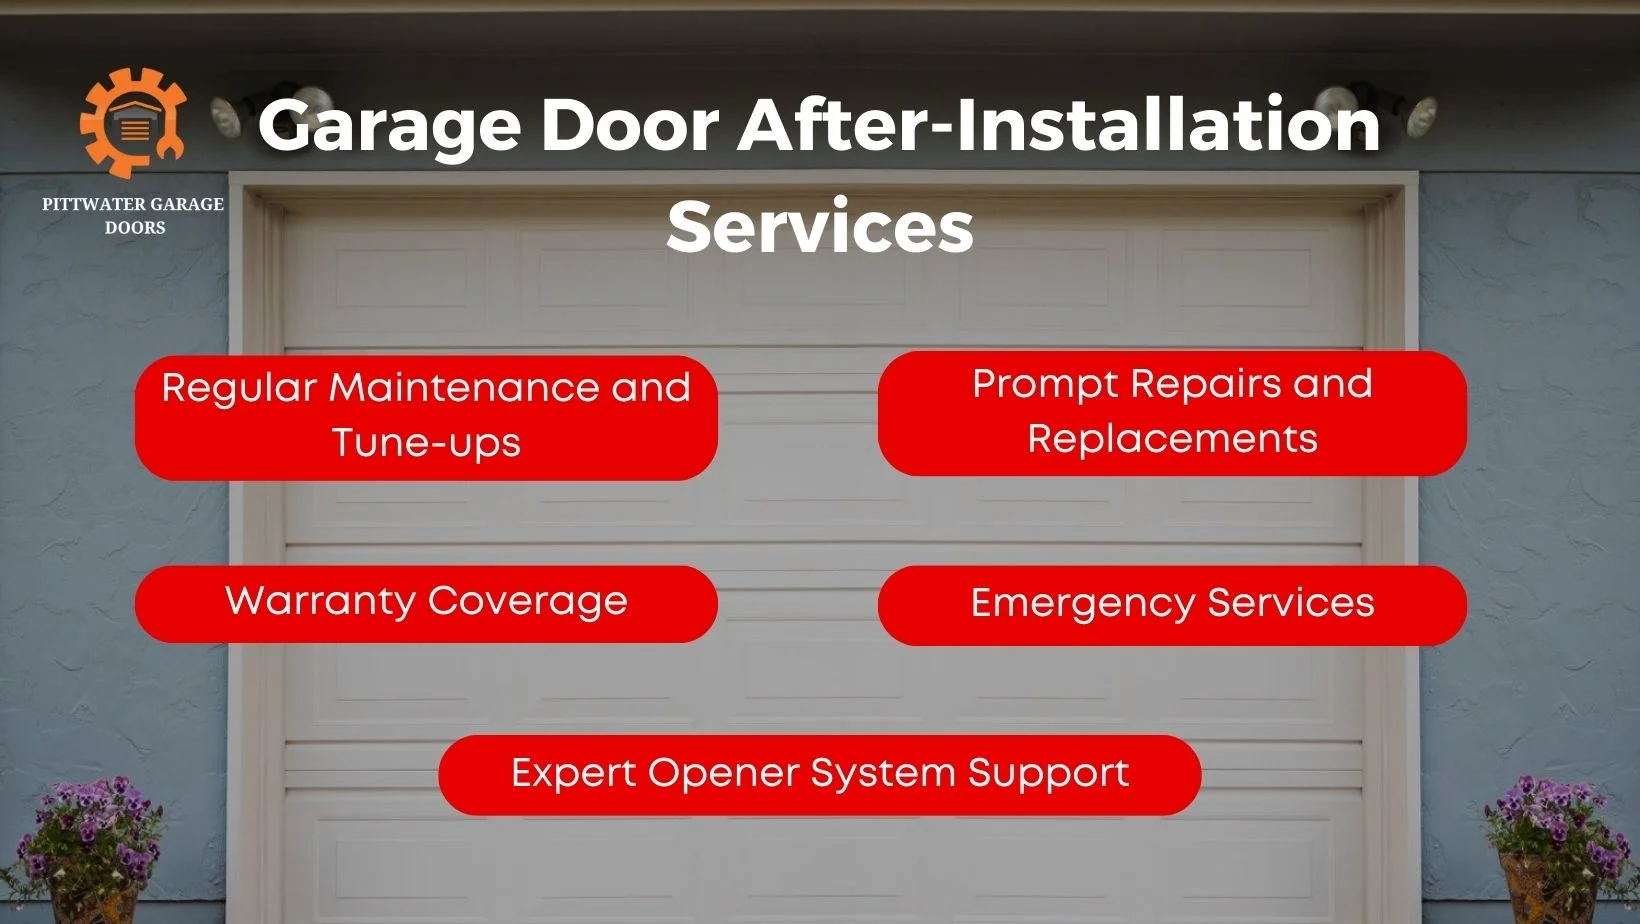 Garage Door After-Installation Services